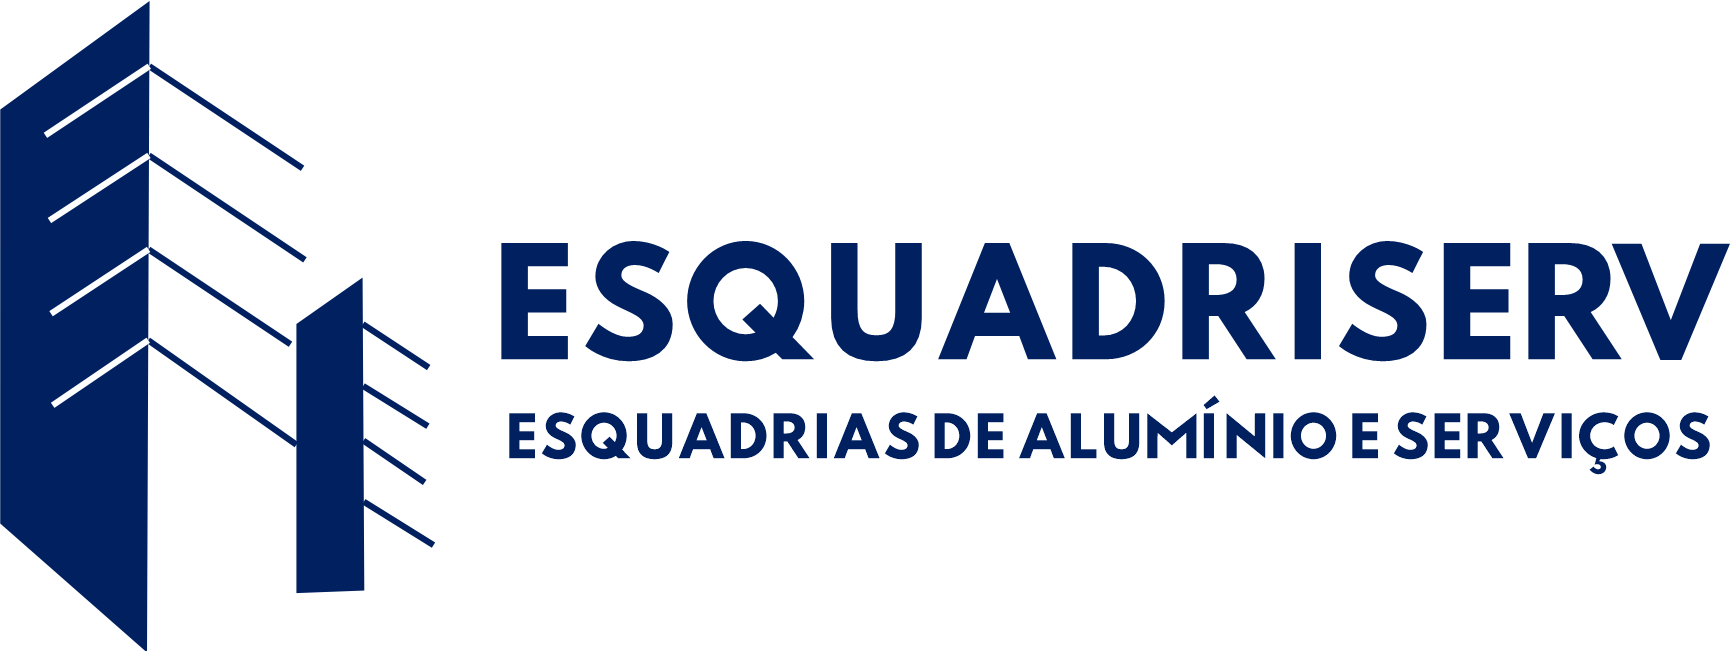 Logo Esquadriserv